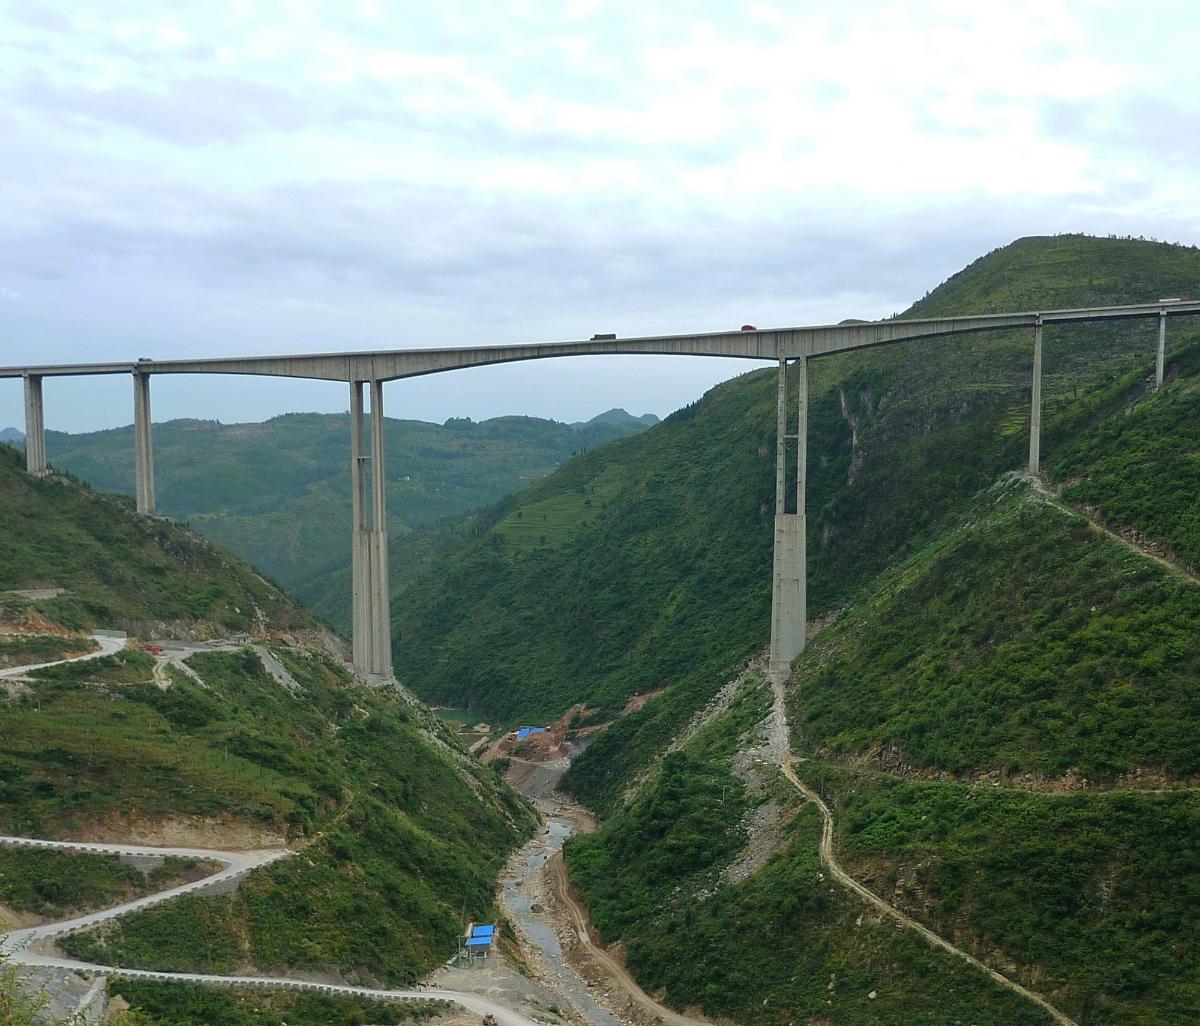 Zhuchanghe Bridge in Guizhou province, China 